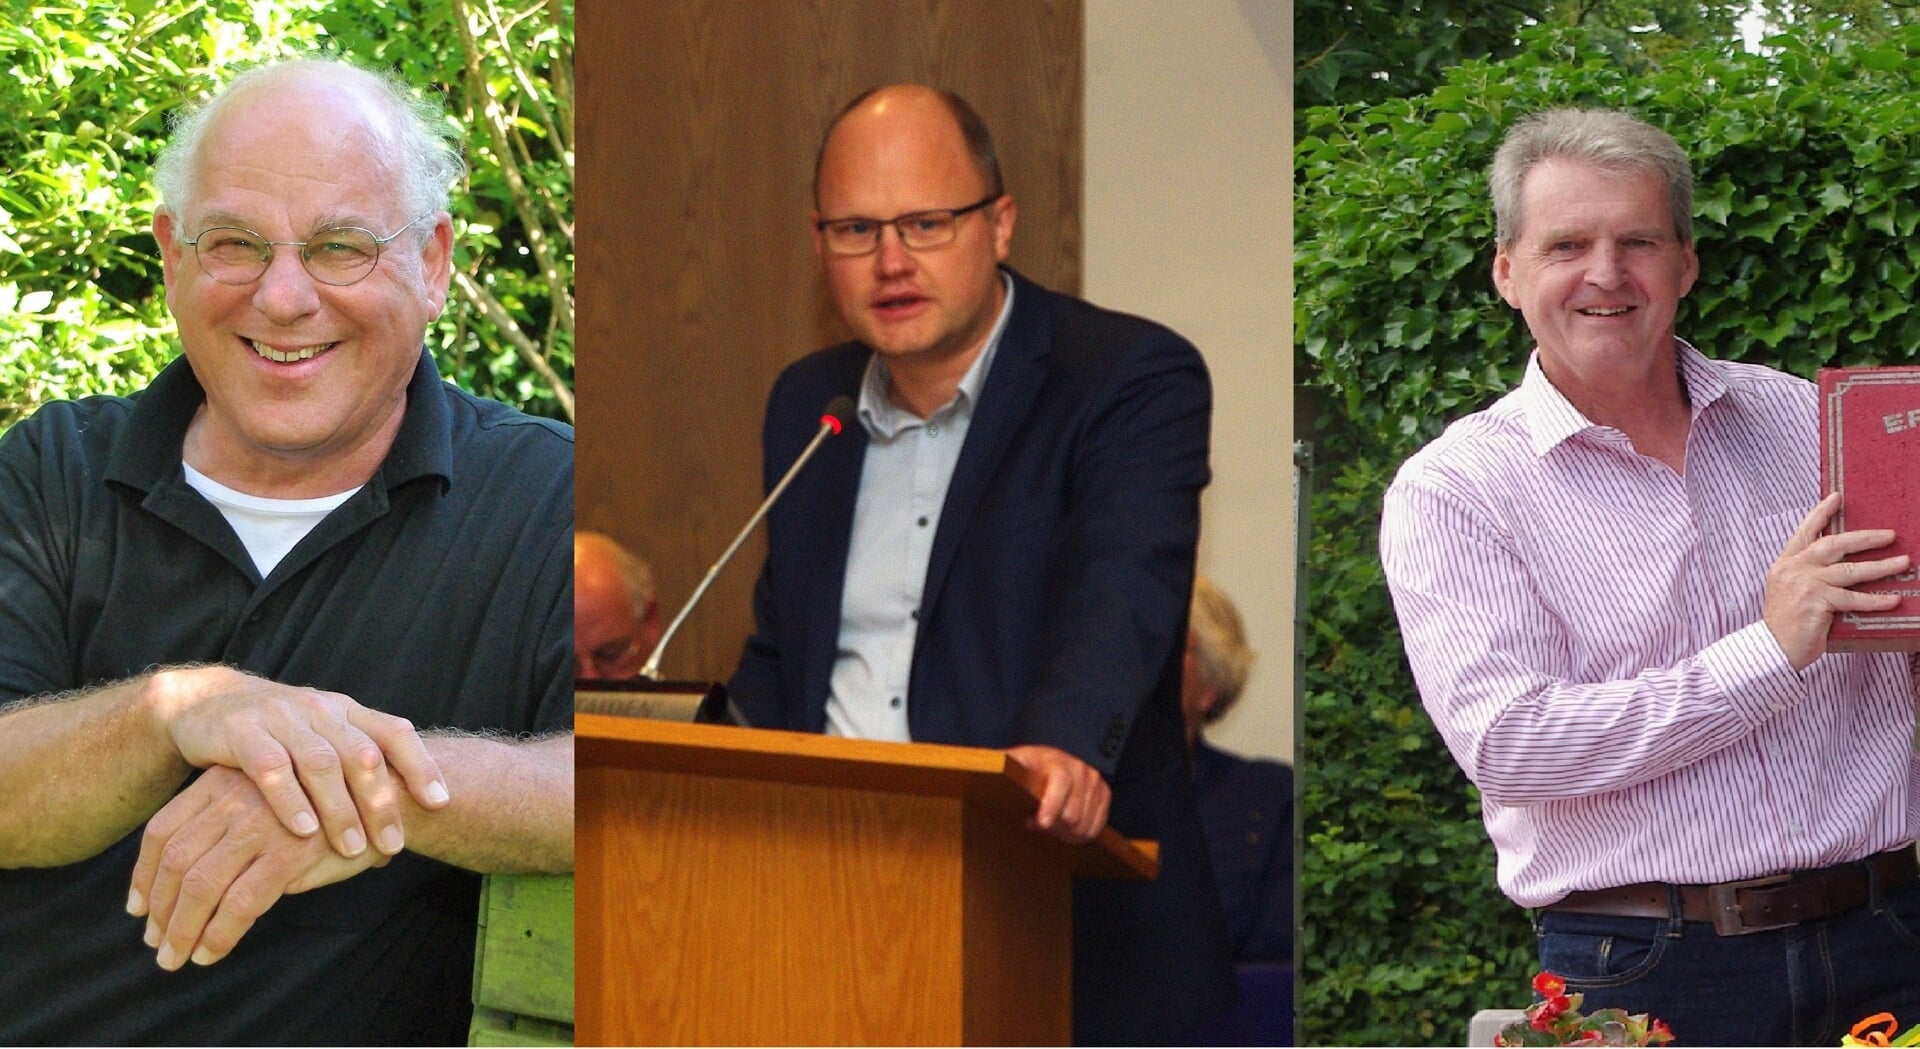 De kandidaat-wethouders: Tim van Tongeren, Elfred Bus en Dick de Groot.